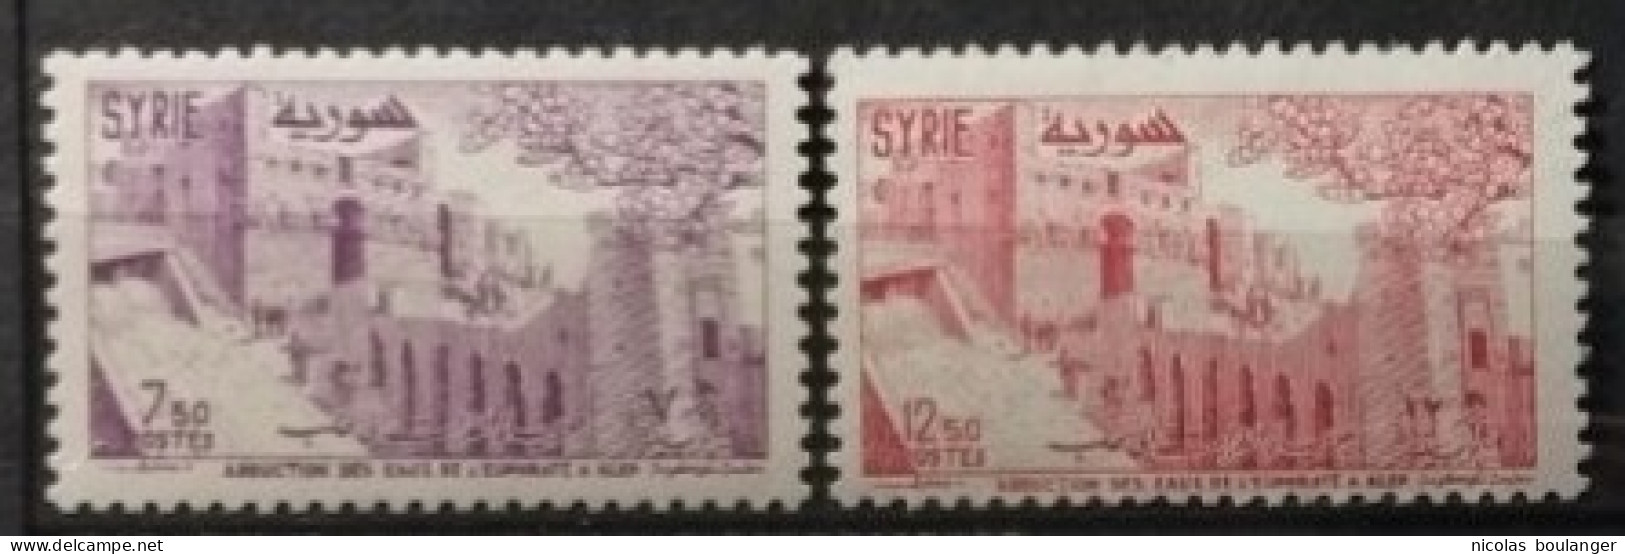 Syrie 1955 / Yvert N°76-77 / ** - Syrie